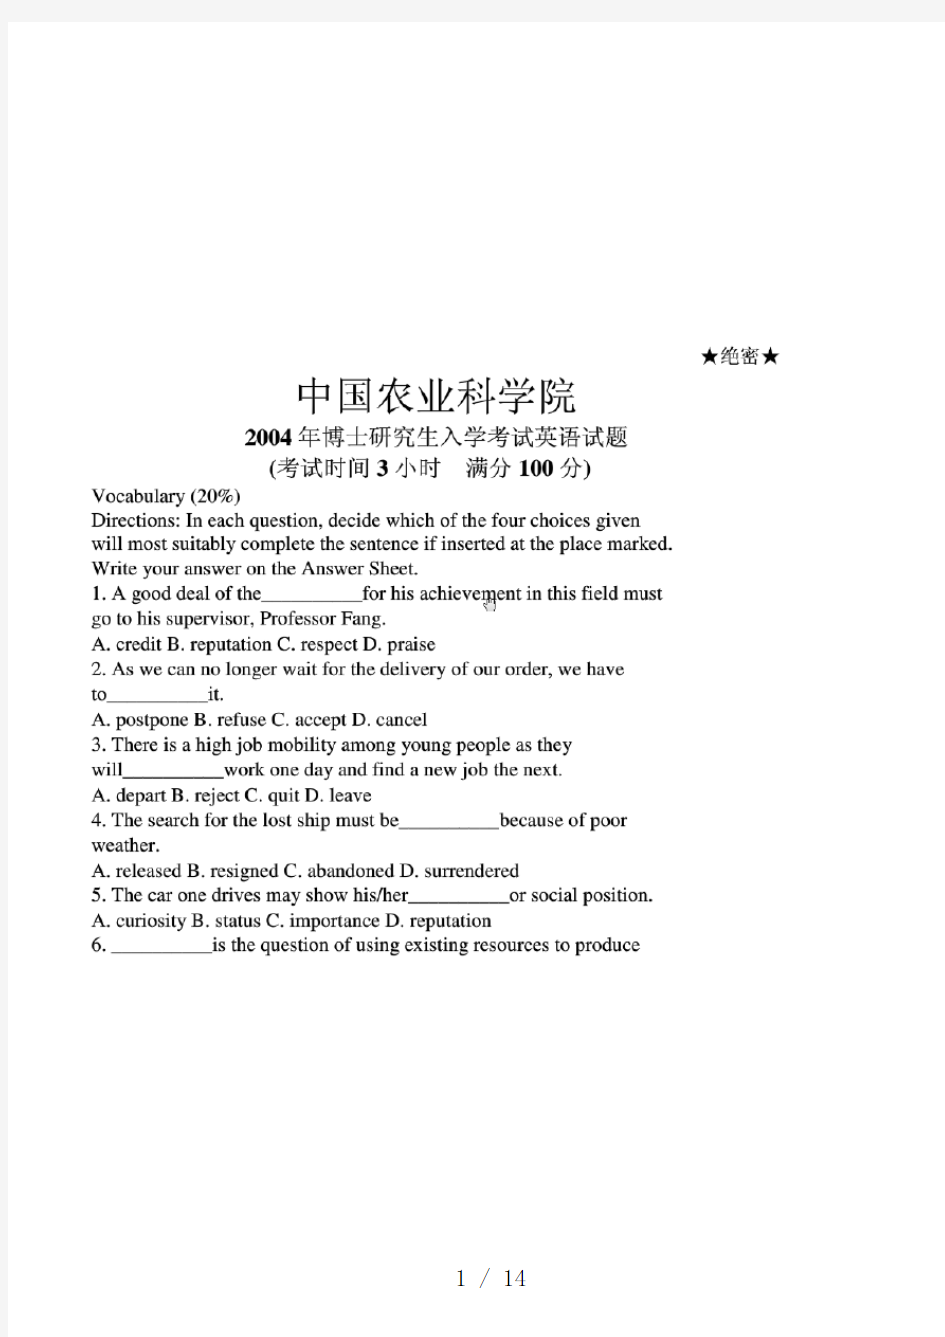 中国农业科学院英语考试题